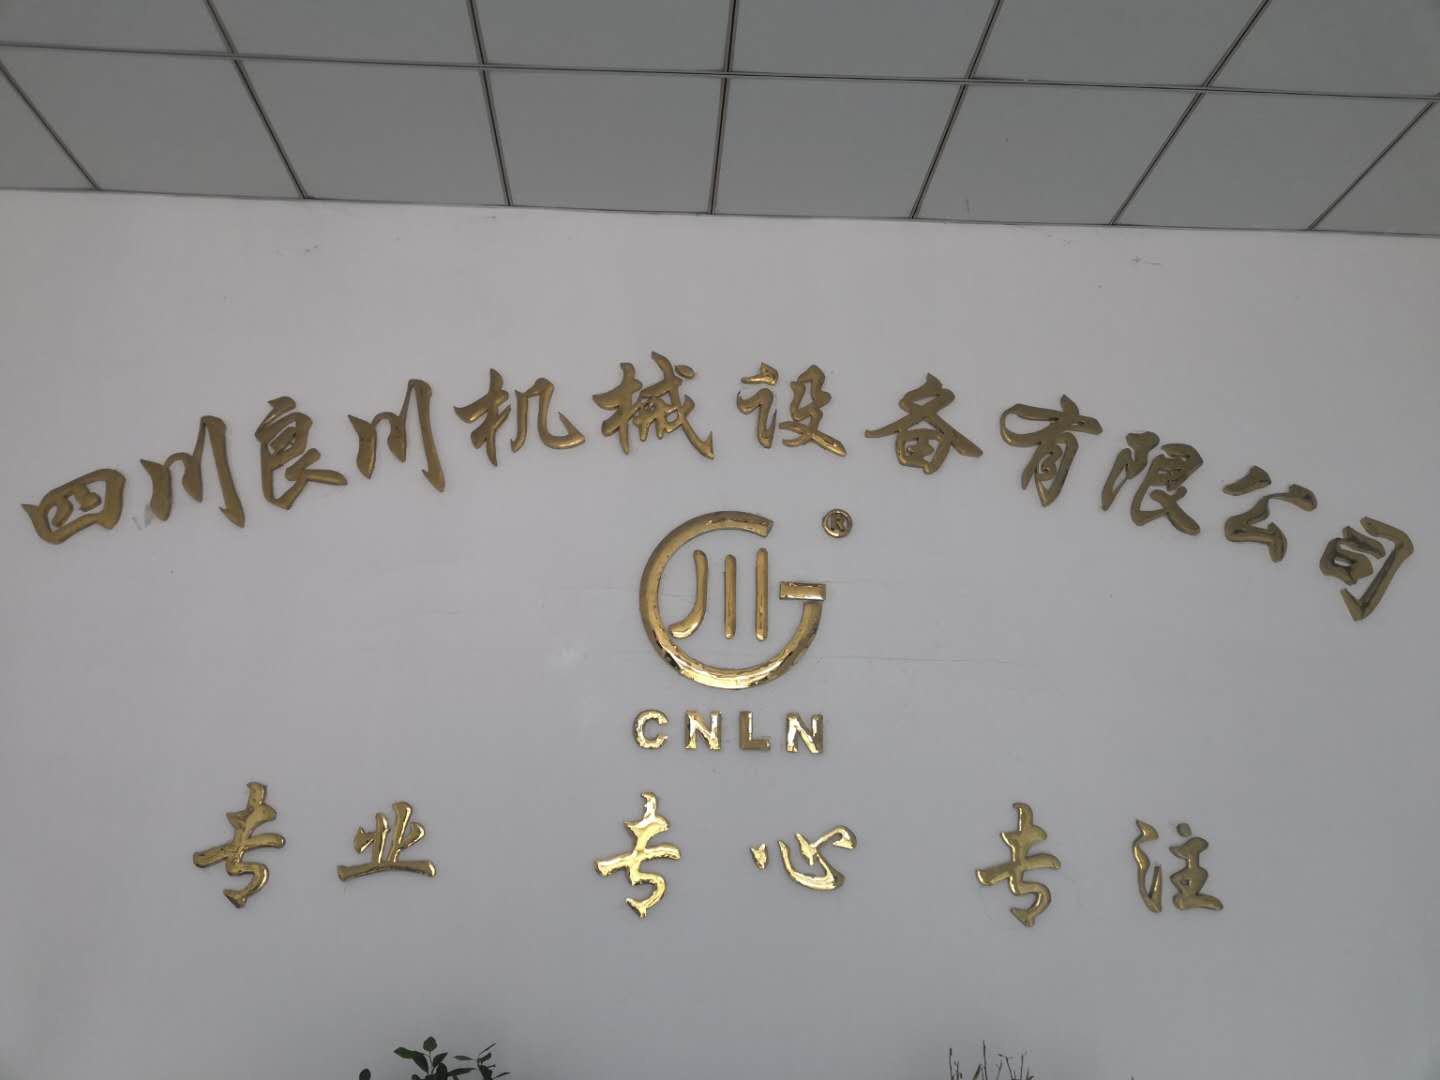 SiChuan Liangchuan Mechanical Equipment Co.,Ltd